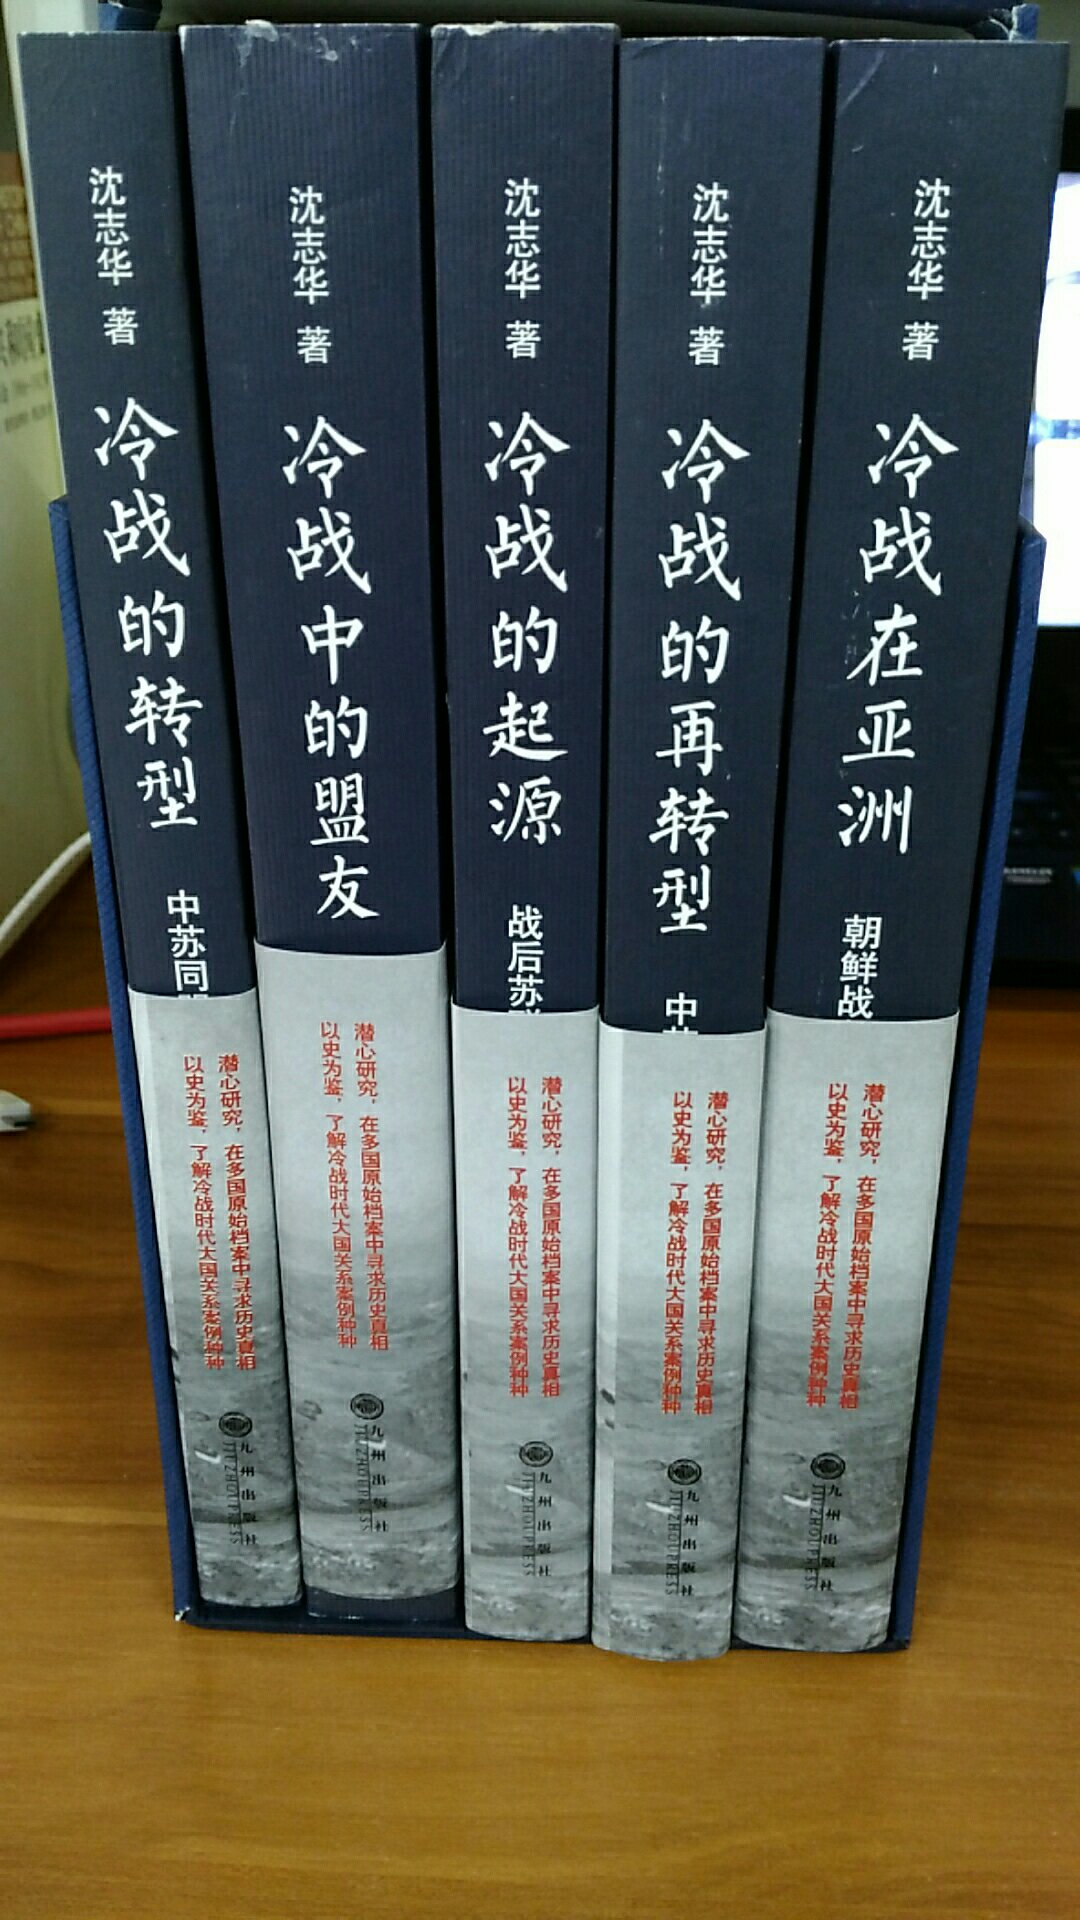 物流很快，昨天买的，今天就到了。这部书是研究中苏关系、冷战在亚洲产生发展演变的力作。